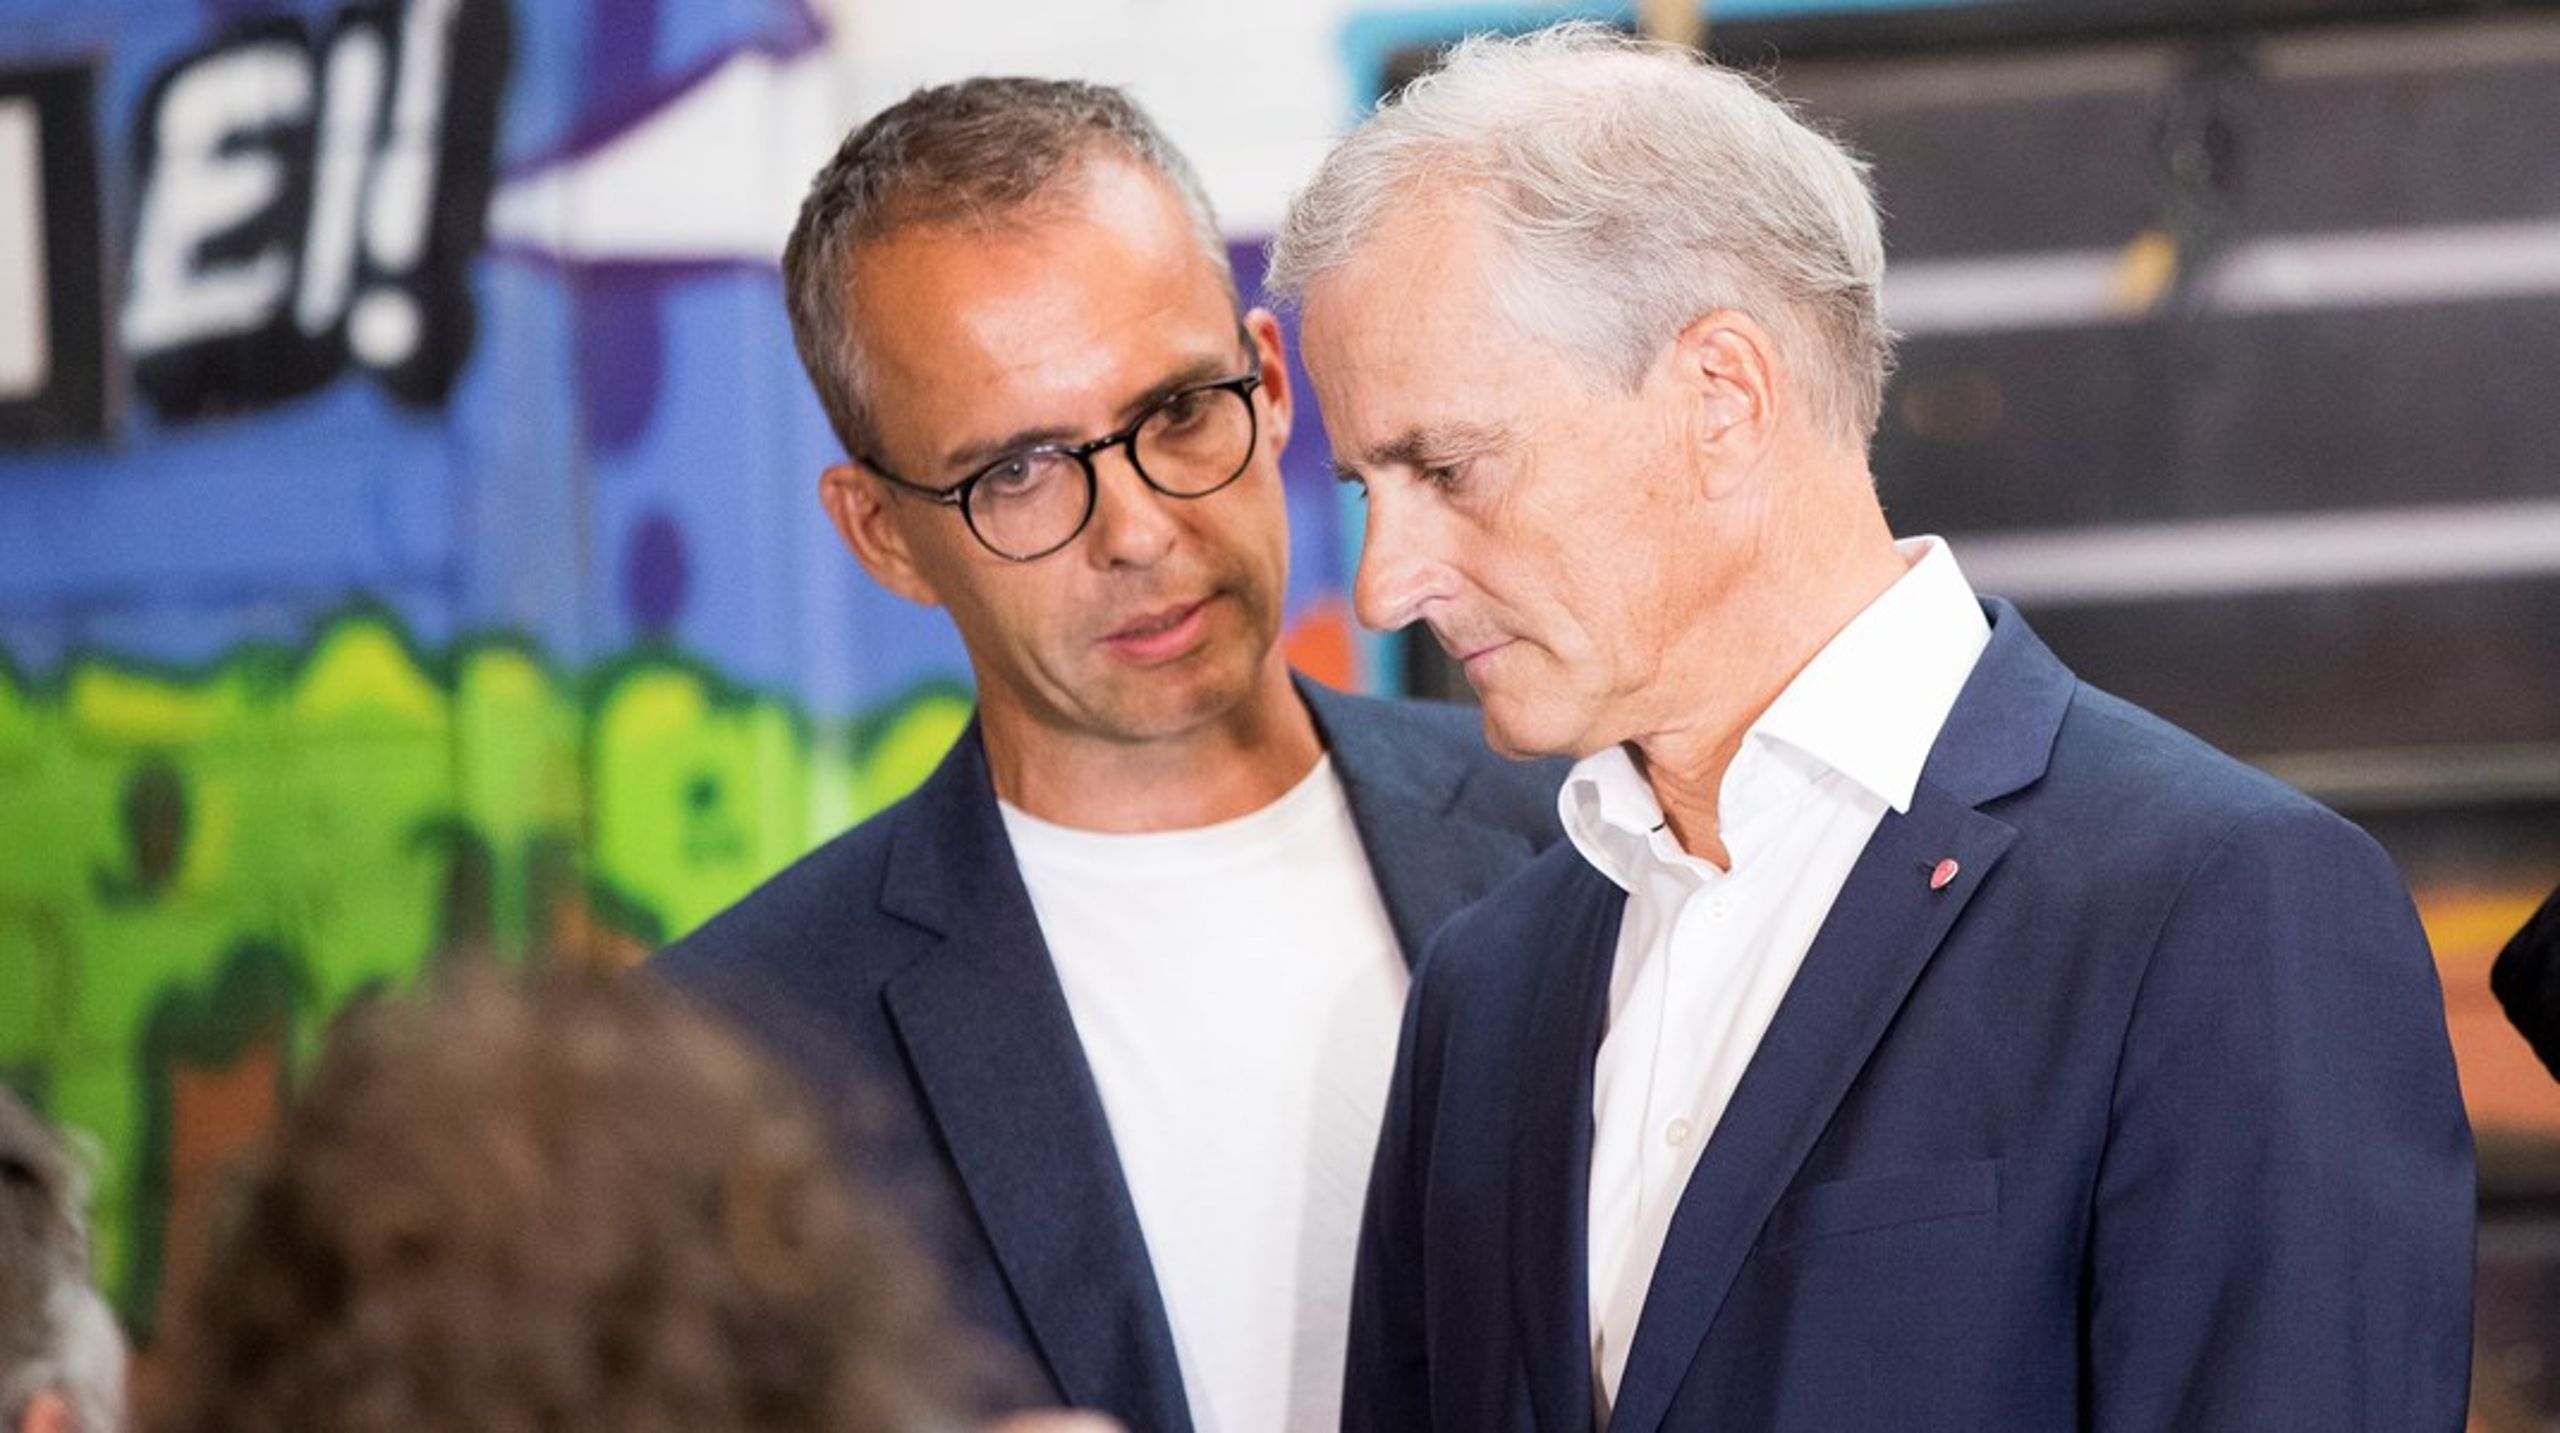 Jarle Roheim Håkonsen, her sammen med statsminister Jonas Gahr Støre i valgkampen i 2019, slutter i jobben som kommunikasjonssjef for Arbeiderpartiets stortingsgruppe.